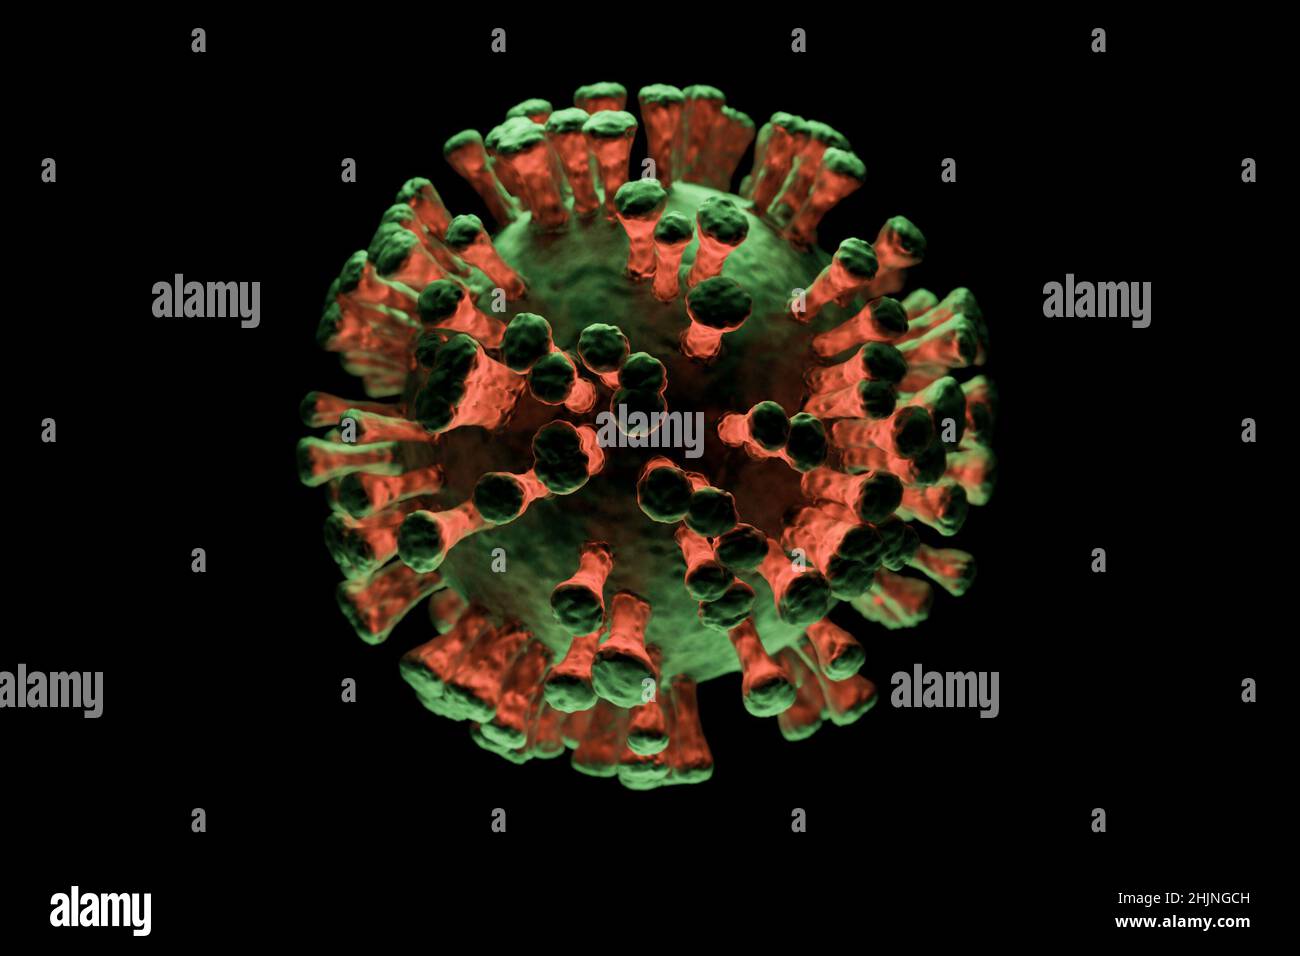 Illustrazione di una singola cellula virale su sfondo scuro, visualizzazione di un'infezione Foto Stock